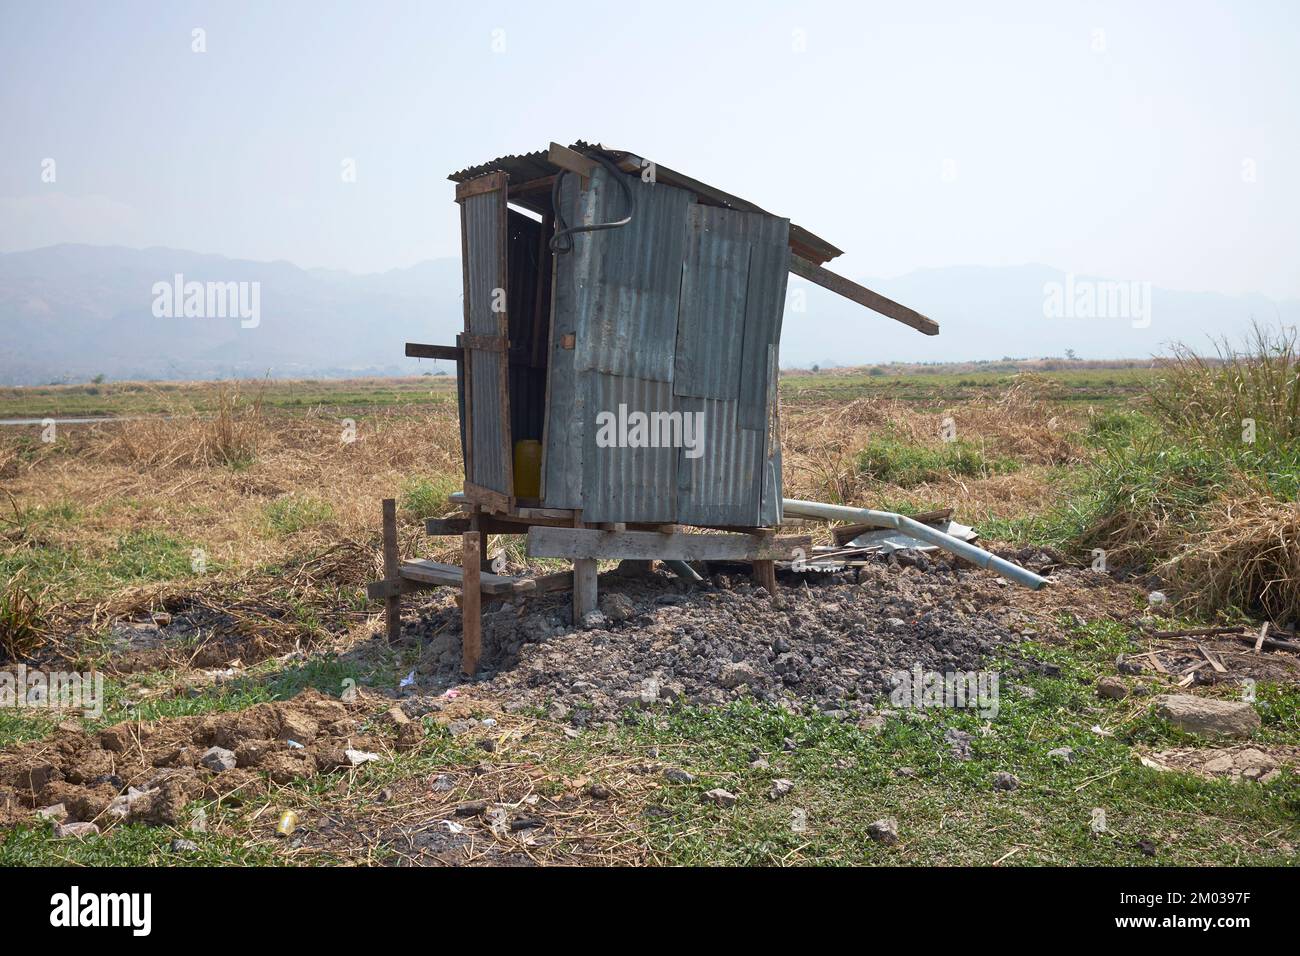 Toilette de fortune Shack Inle Lake Myanmar Banque D'Images